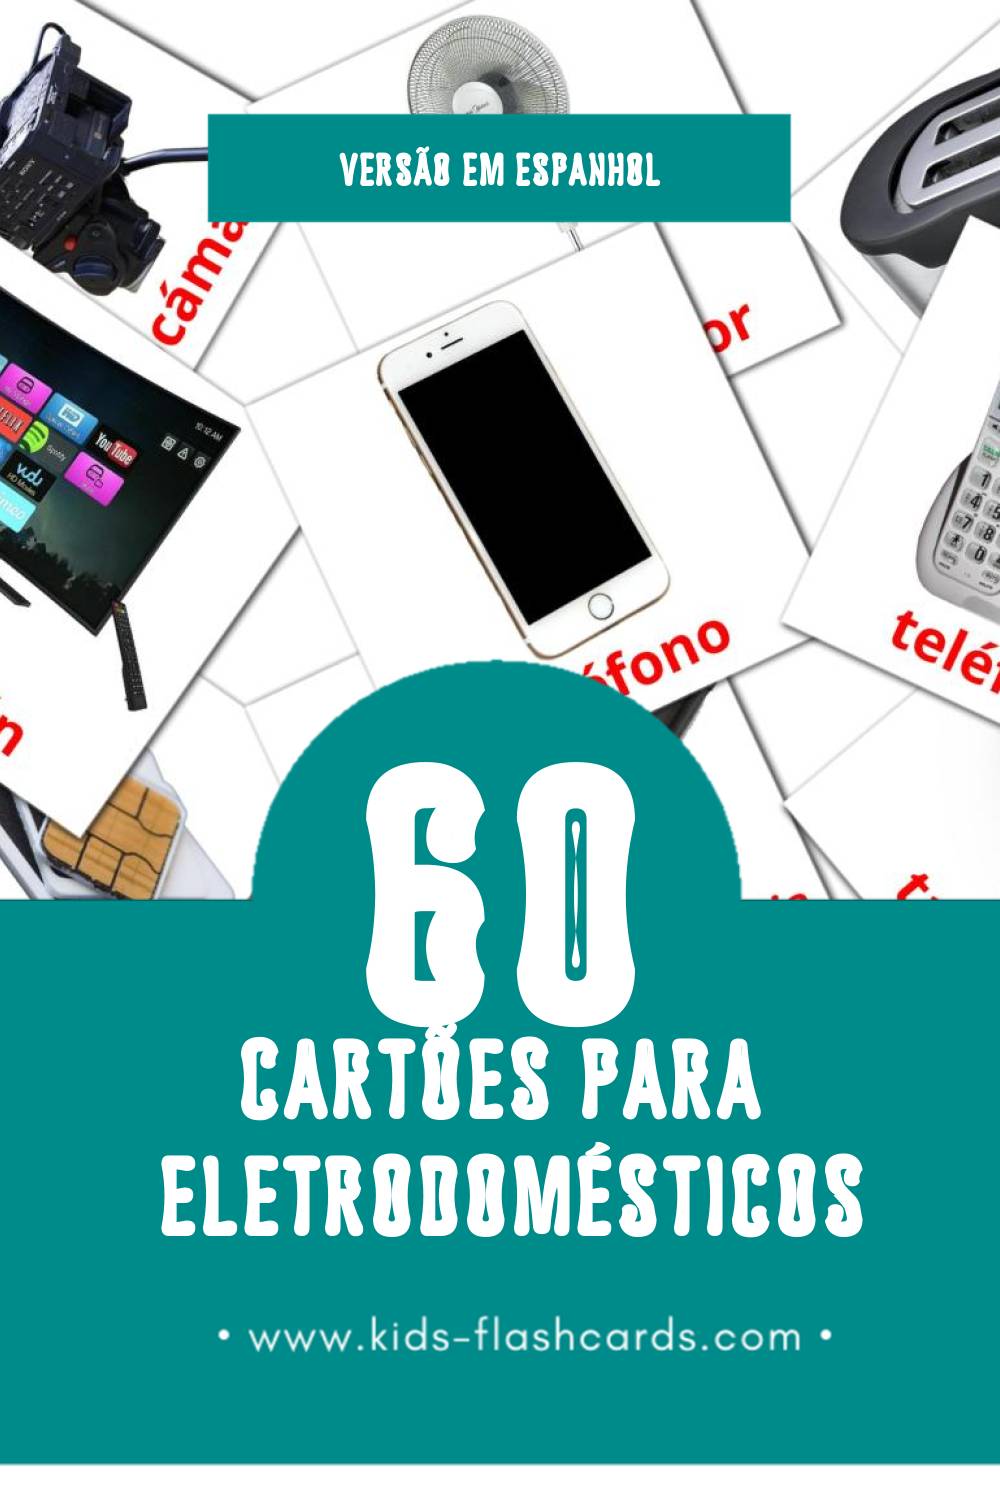 Flashcards de Aparatos domésticos Visuais para Toddlers (60 cartões em Espanhol)